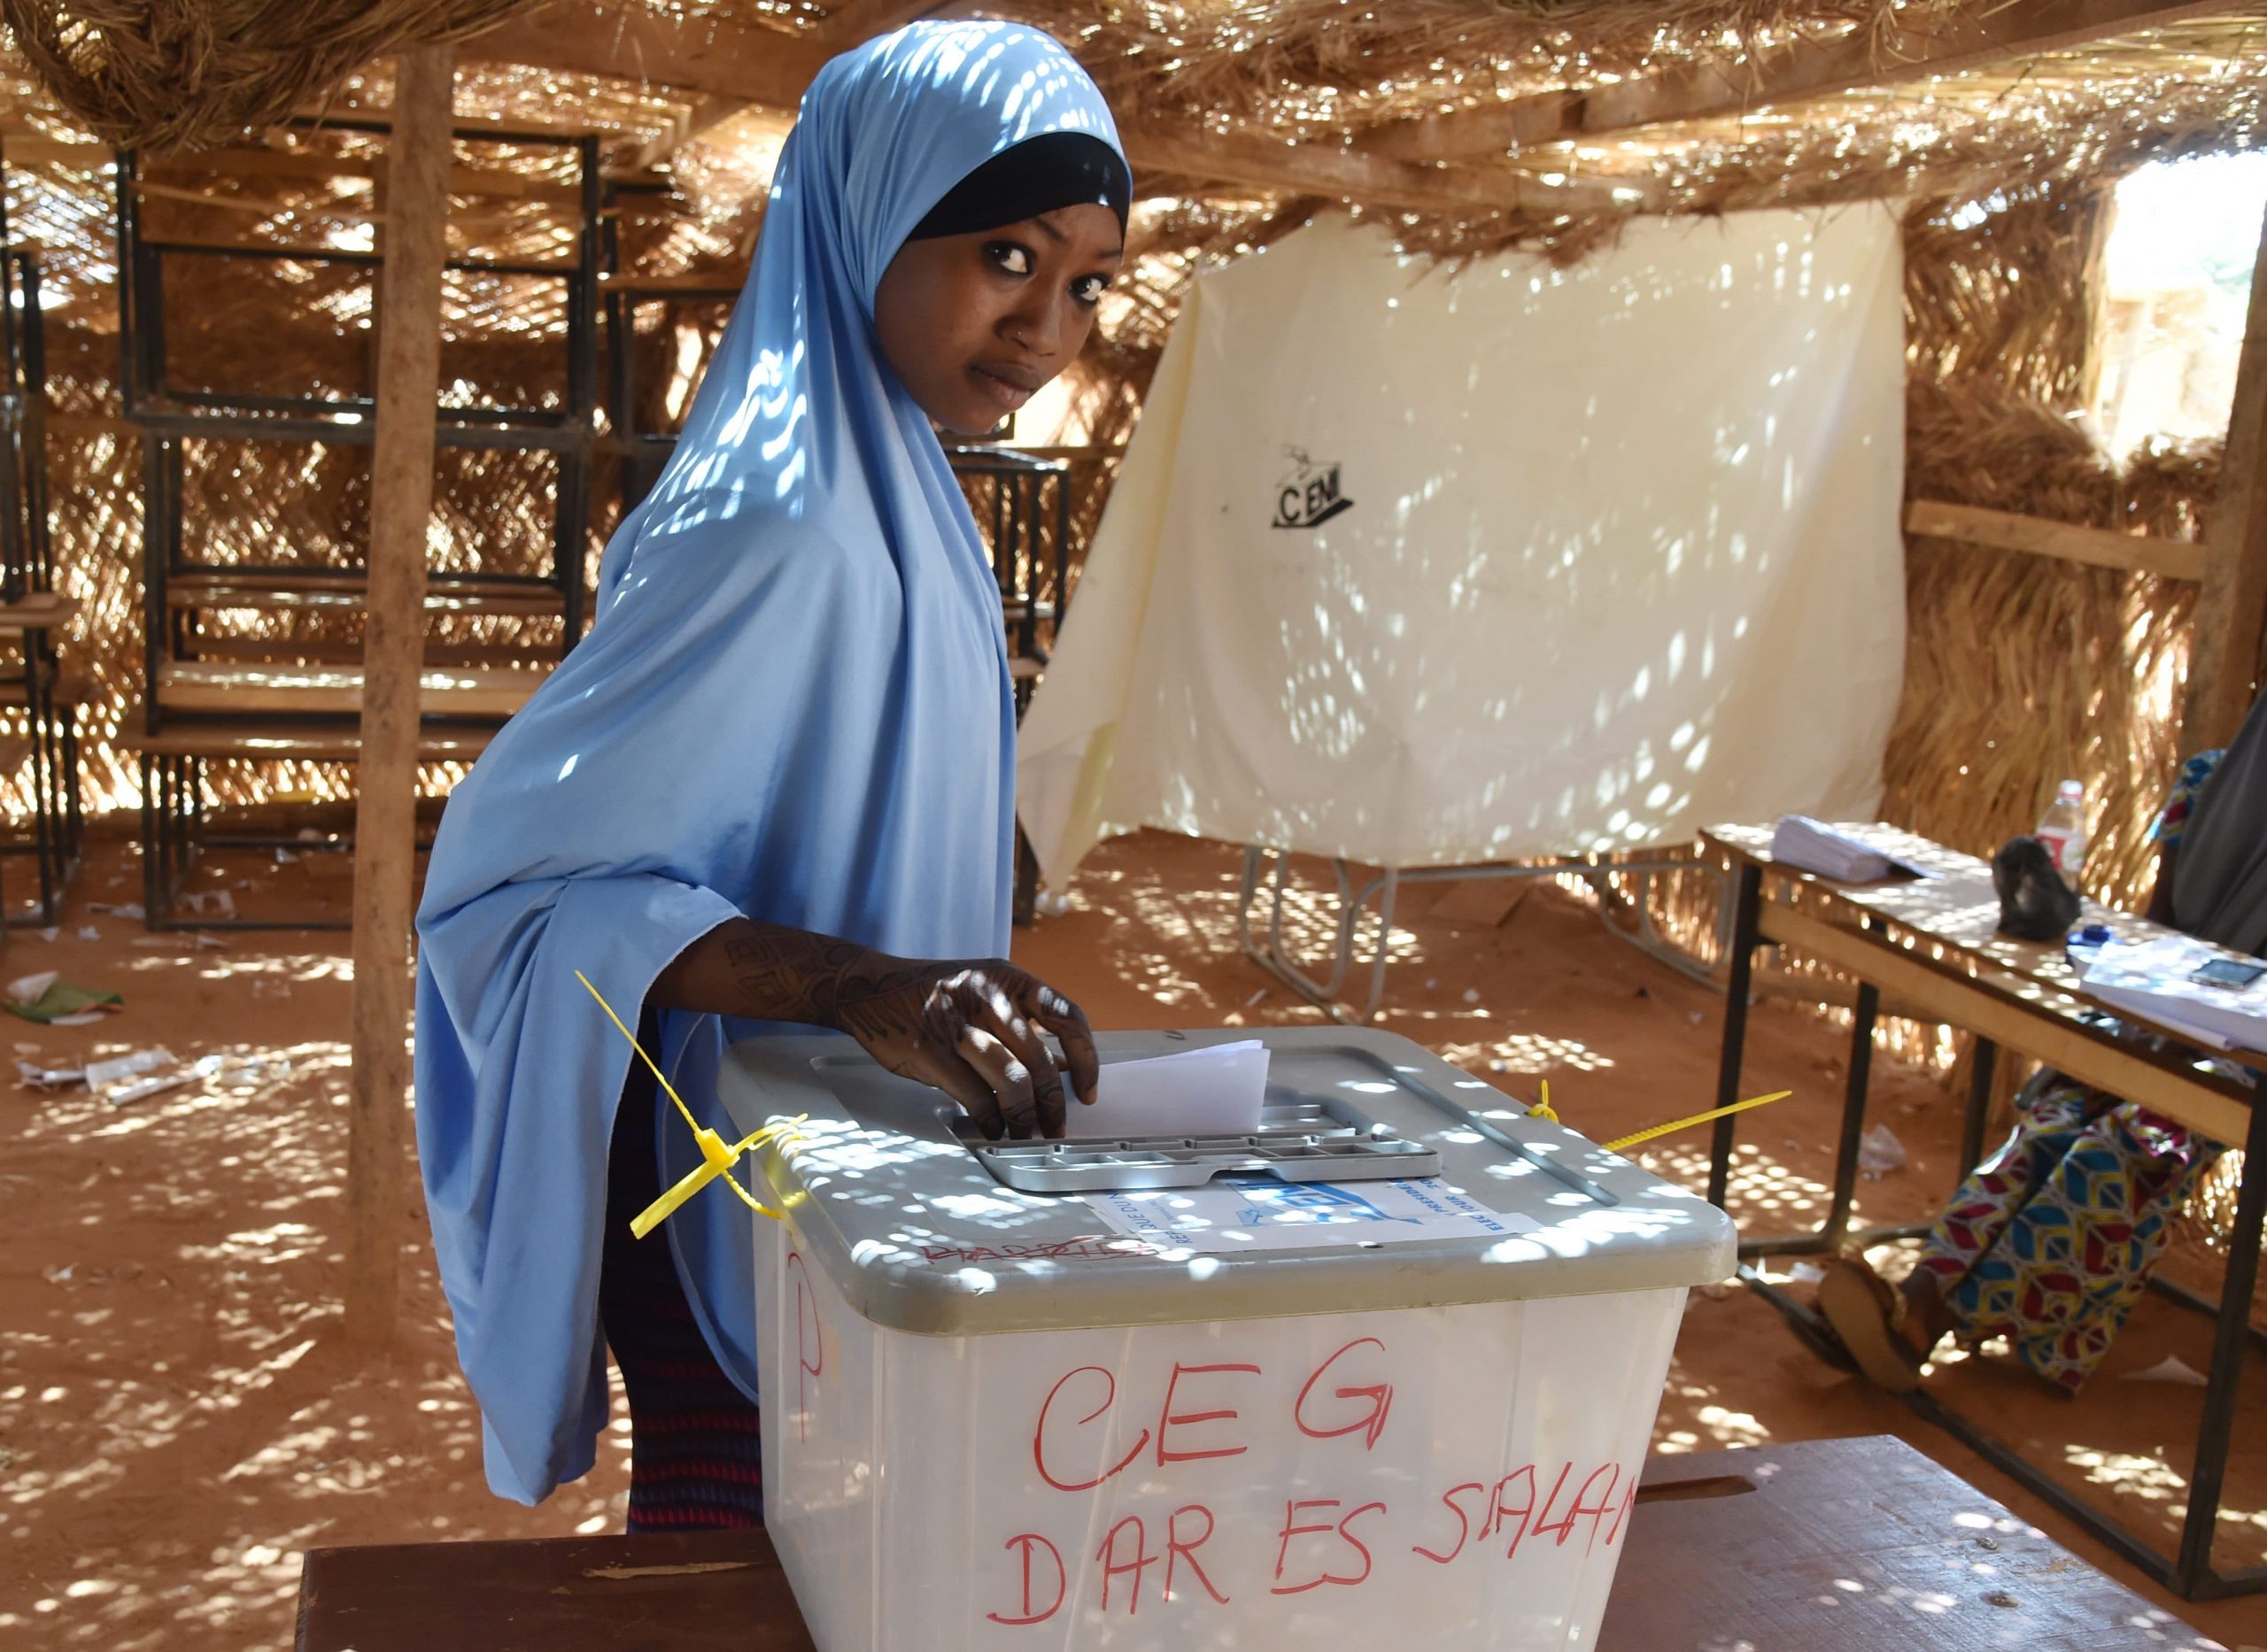 Niger/ Elections 2020-2021 : 13 décembre 2020 date retenue pour les élections locales et régionales